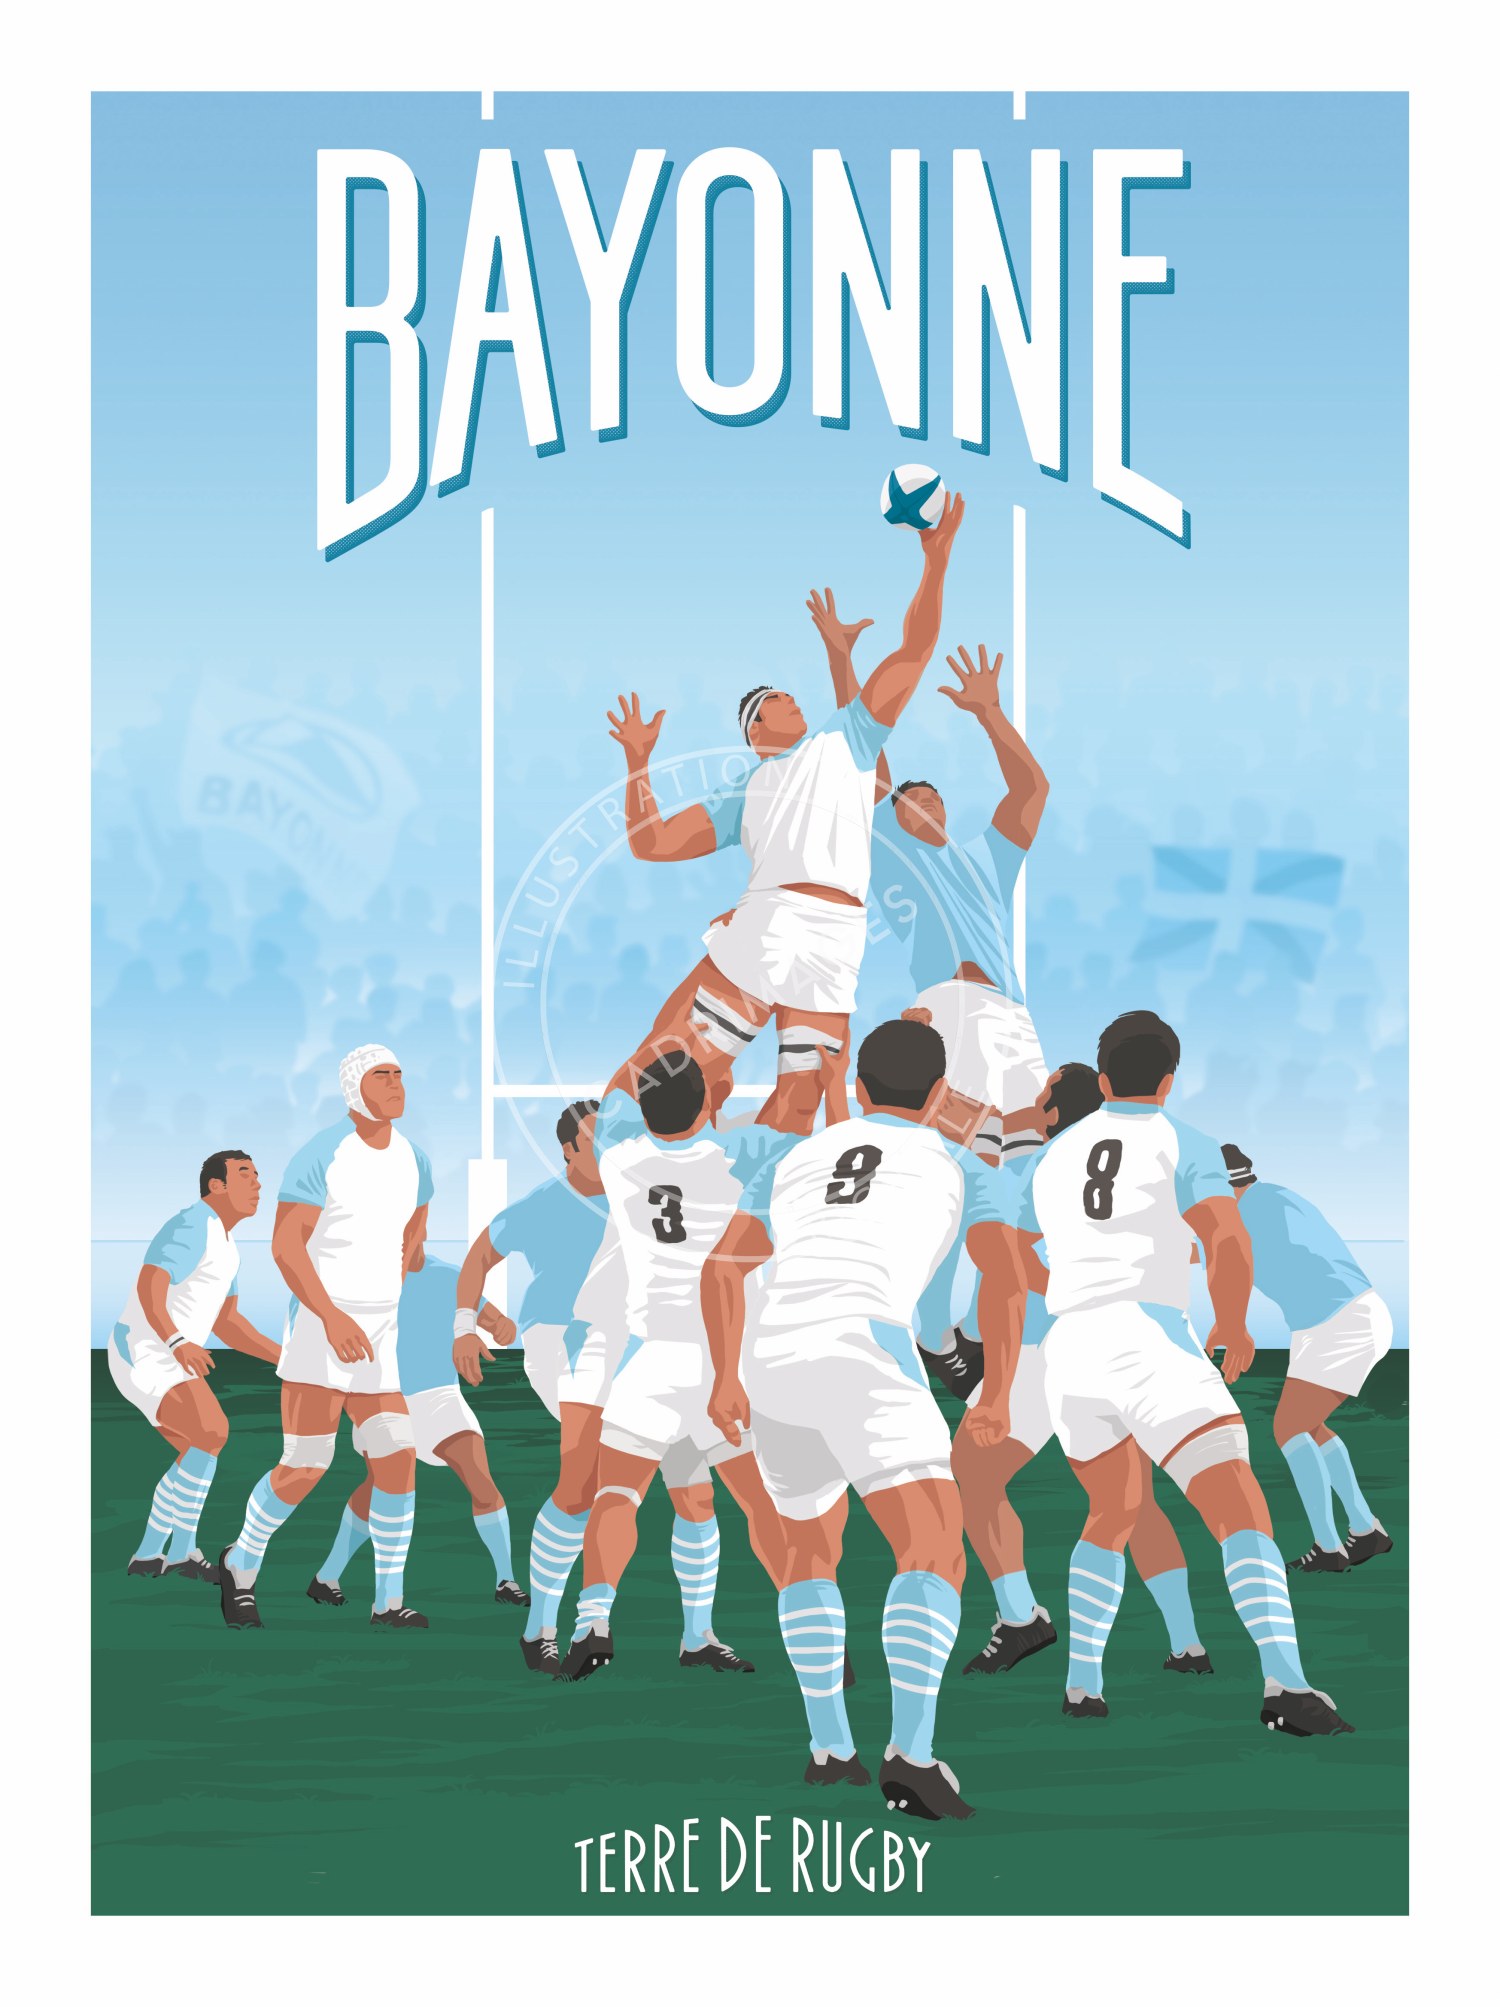 Affiche de rugby, la touche bayonne